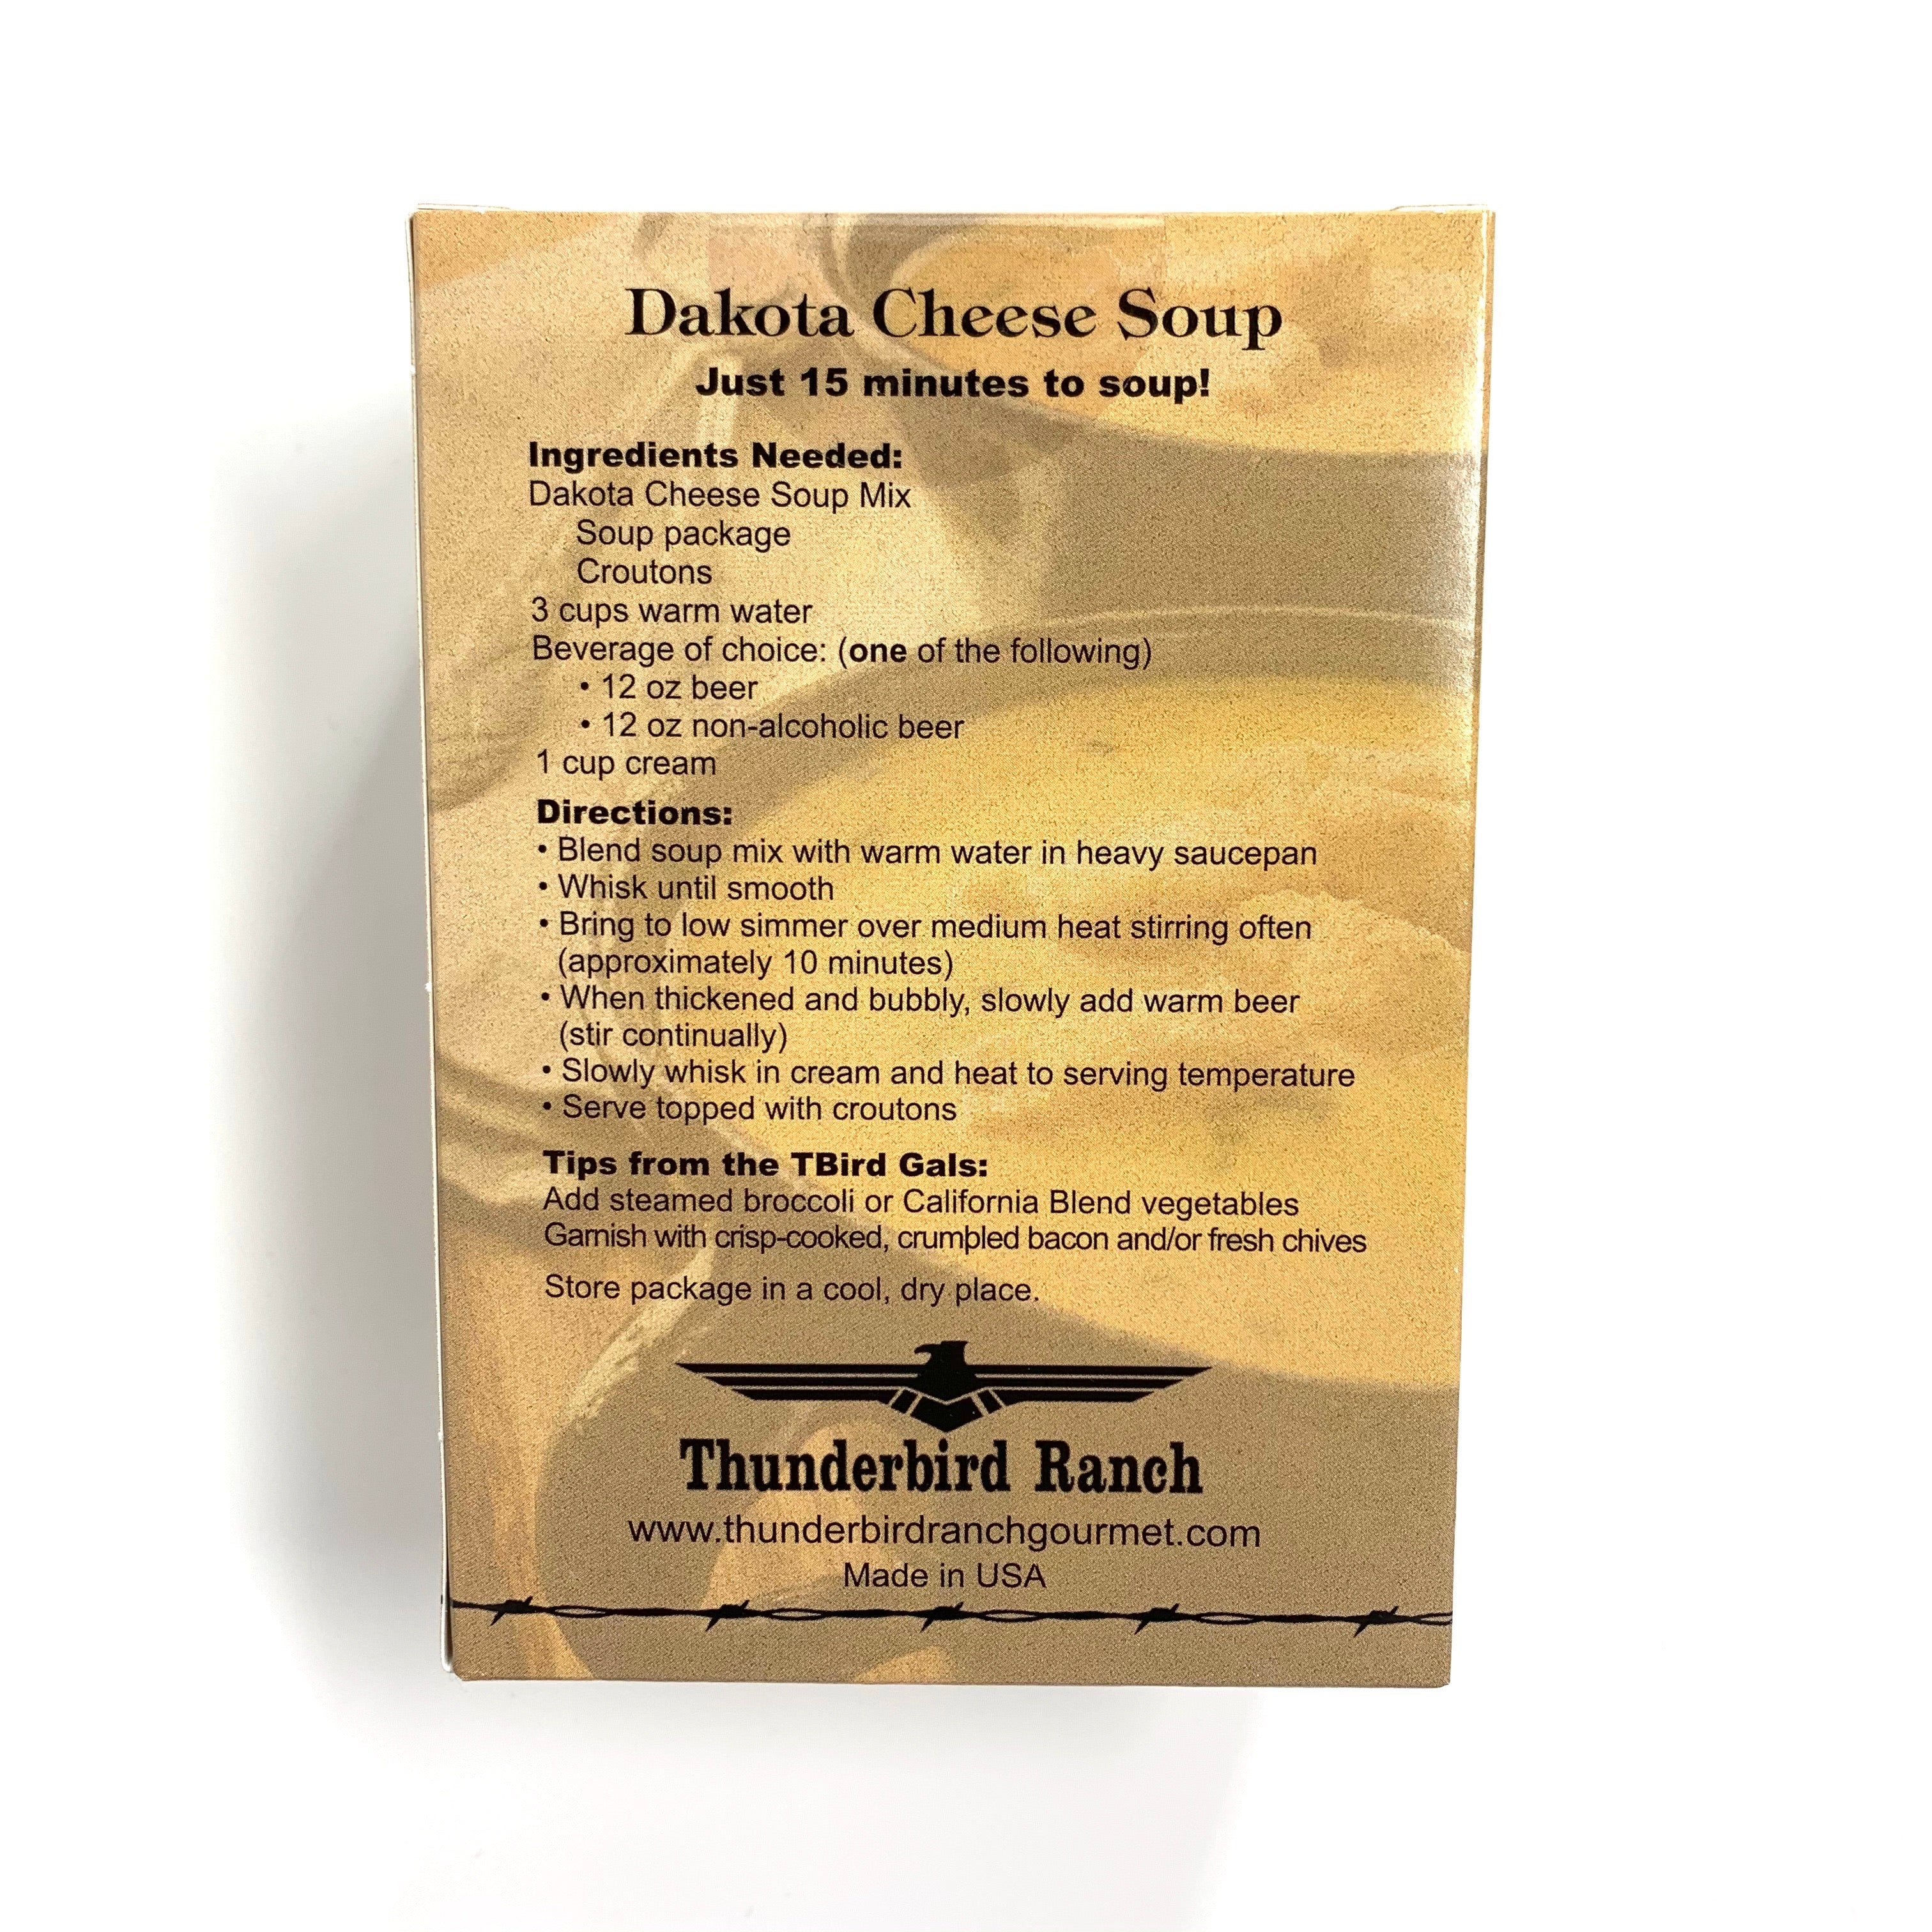 Dakota Cheese Soup